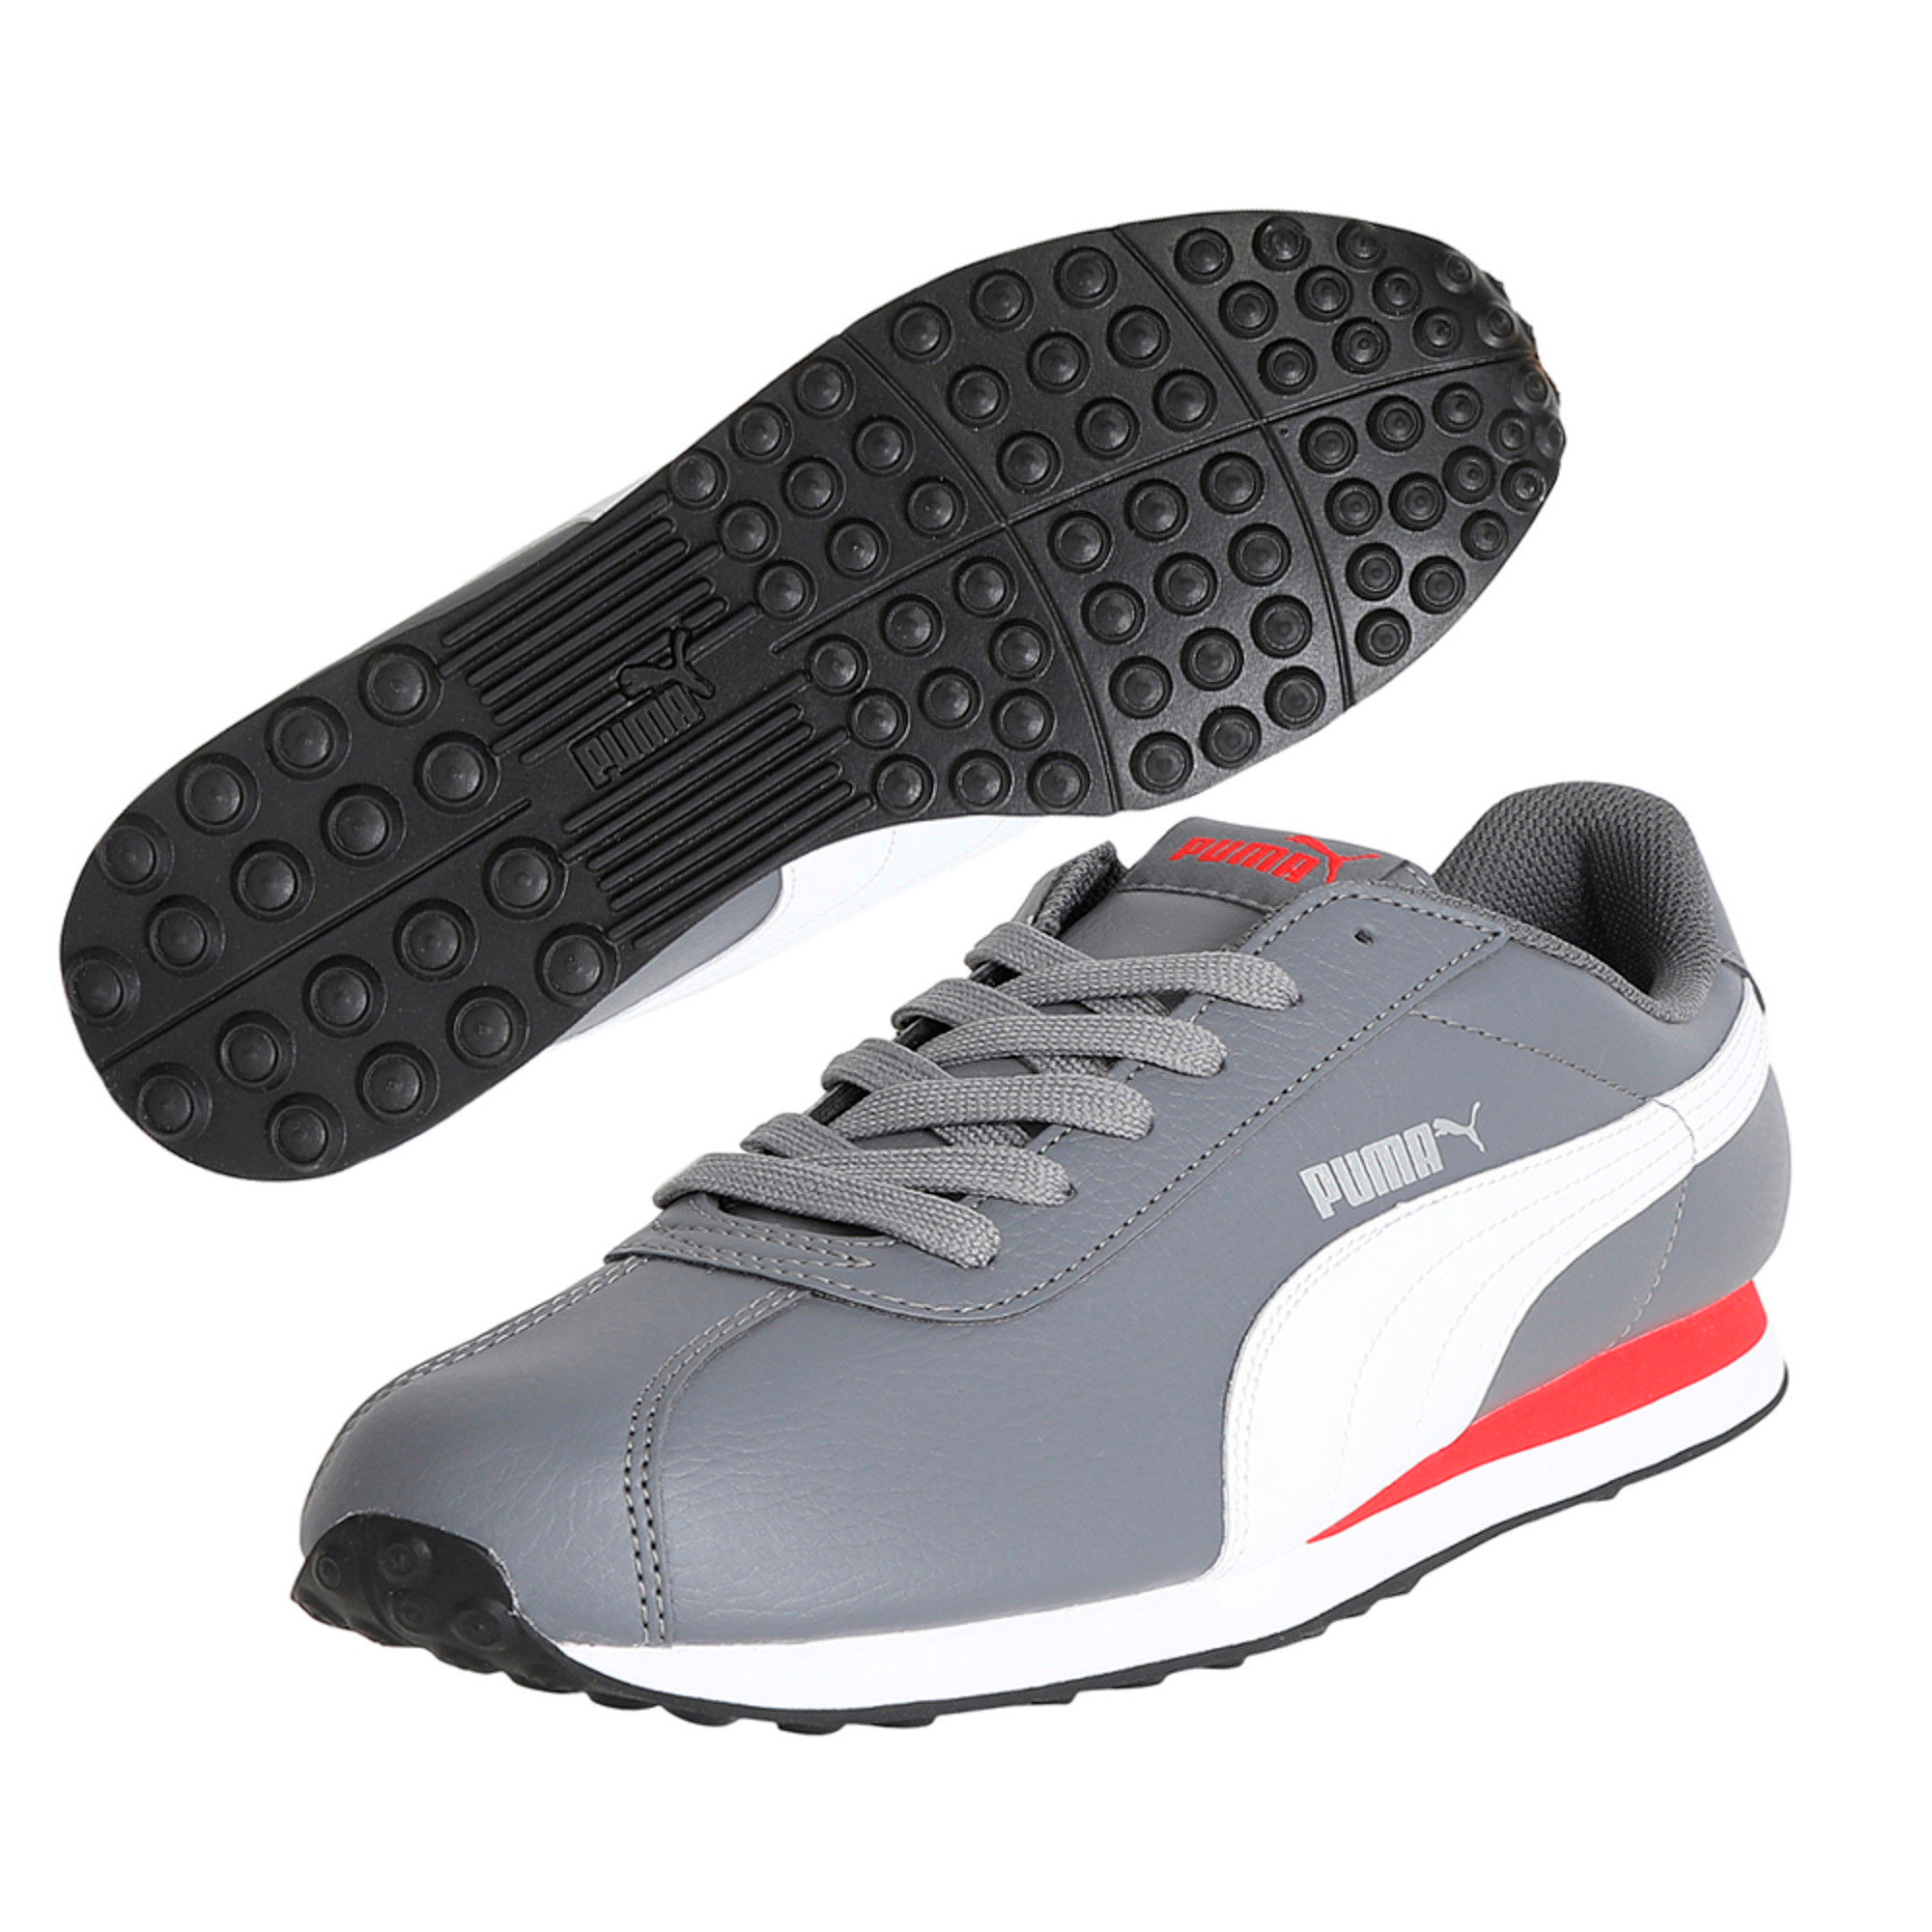 Puma TURIN II Beyaz Erkek Sneaker Ayakkabı 100352193 - Gümrük Deposu